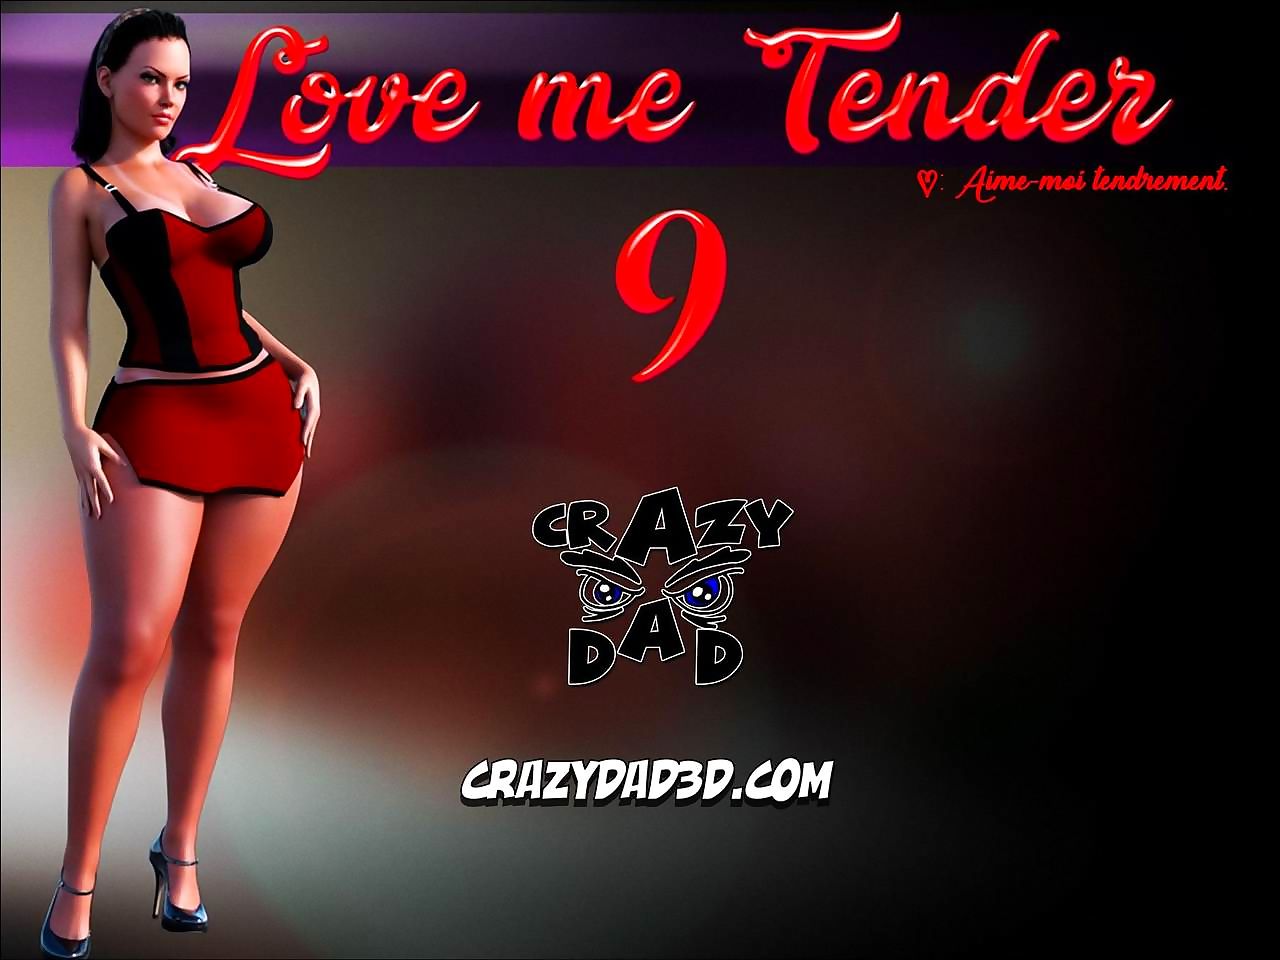 Love me Tender 9